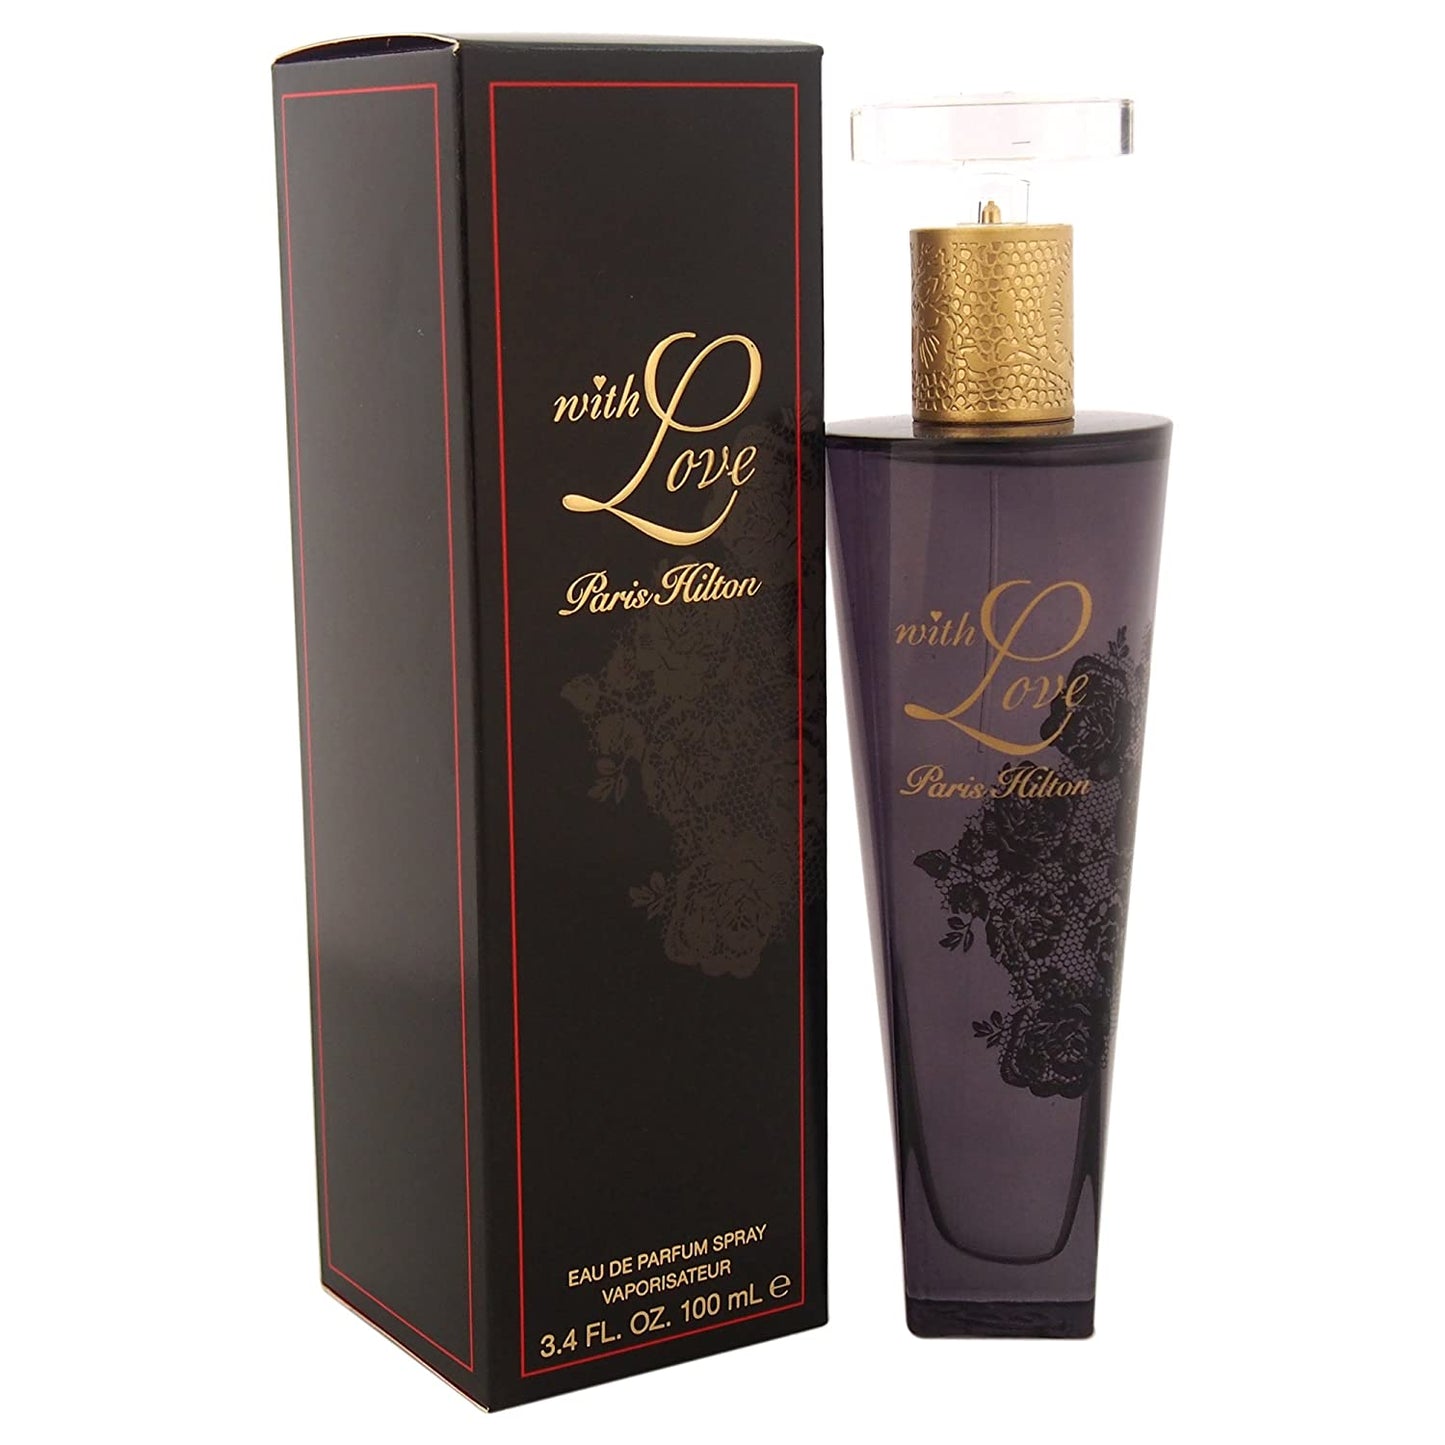 Paris Hilton With Love Perfume for Women 3.4 oz Eau de Parfum Spray